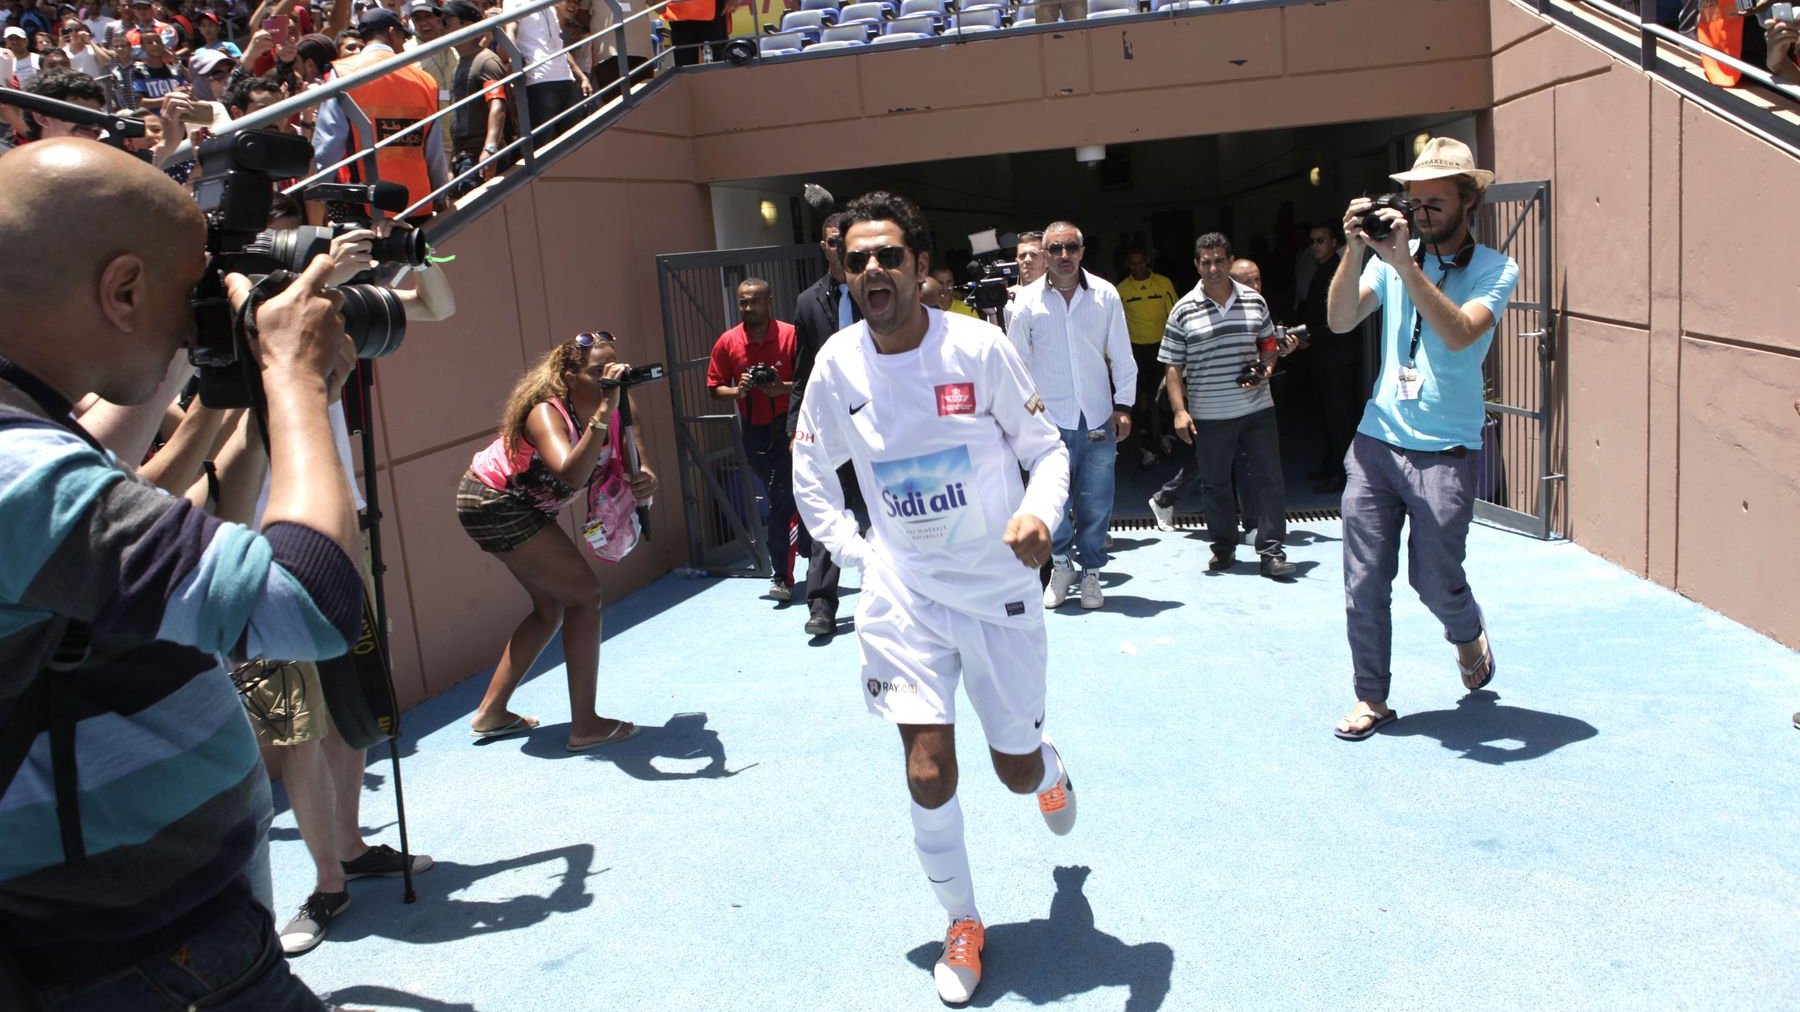 Les tribunes du Grand stade de Marrakech étaient bondées, dimanche en début d'après-midi, pour le match organisé par Jamel Debbouzze, dans le cadre du Marrakech du rire. Un Chrity Game en faveur des enfants des associations El Karam et l’Heure Joyeuse.
